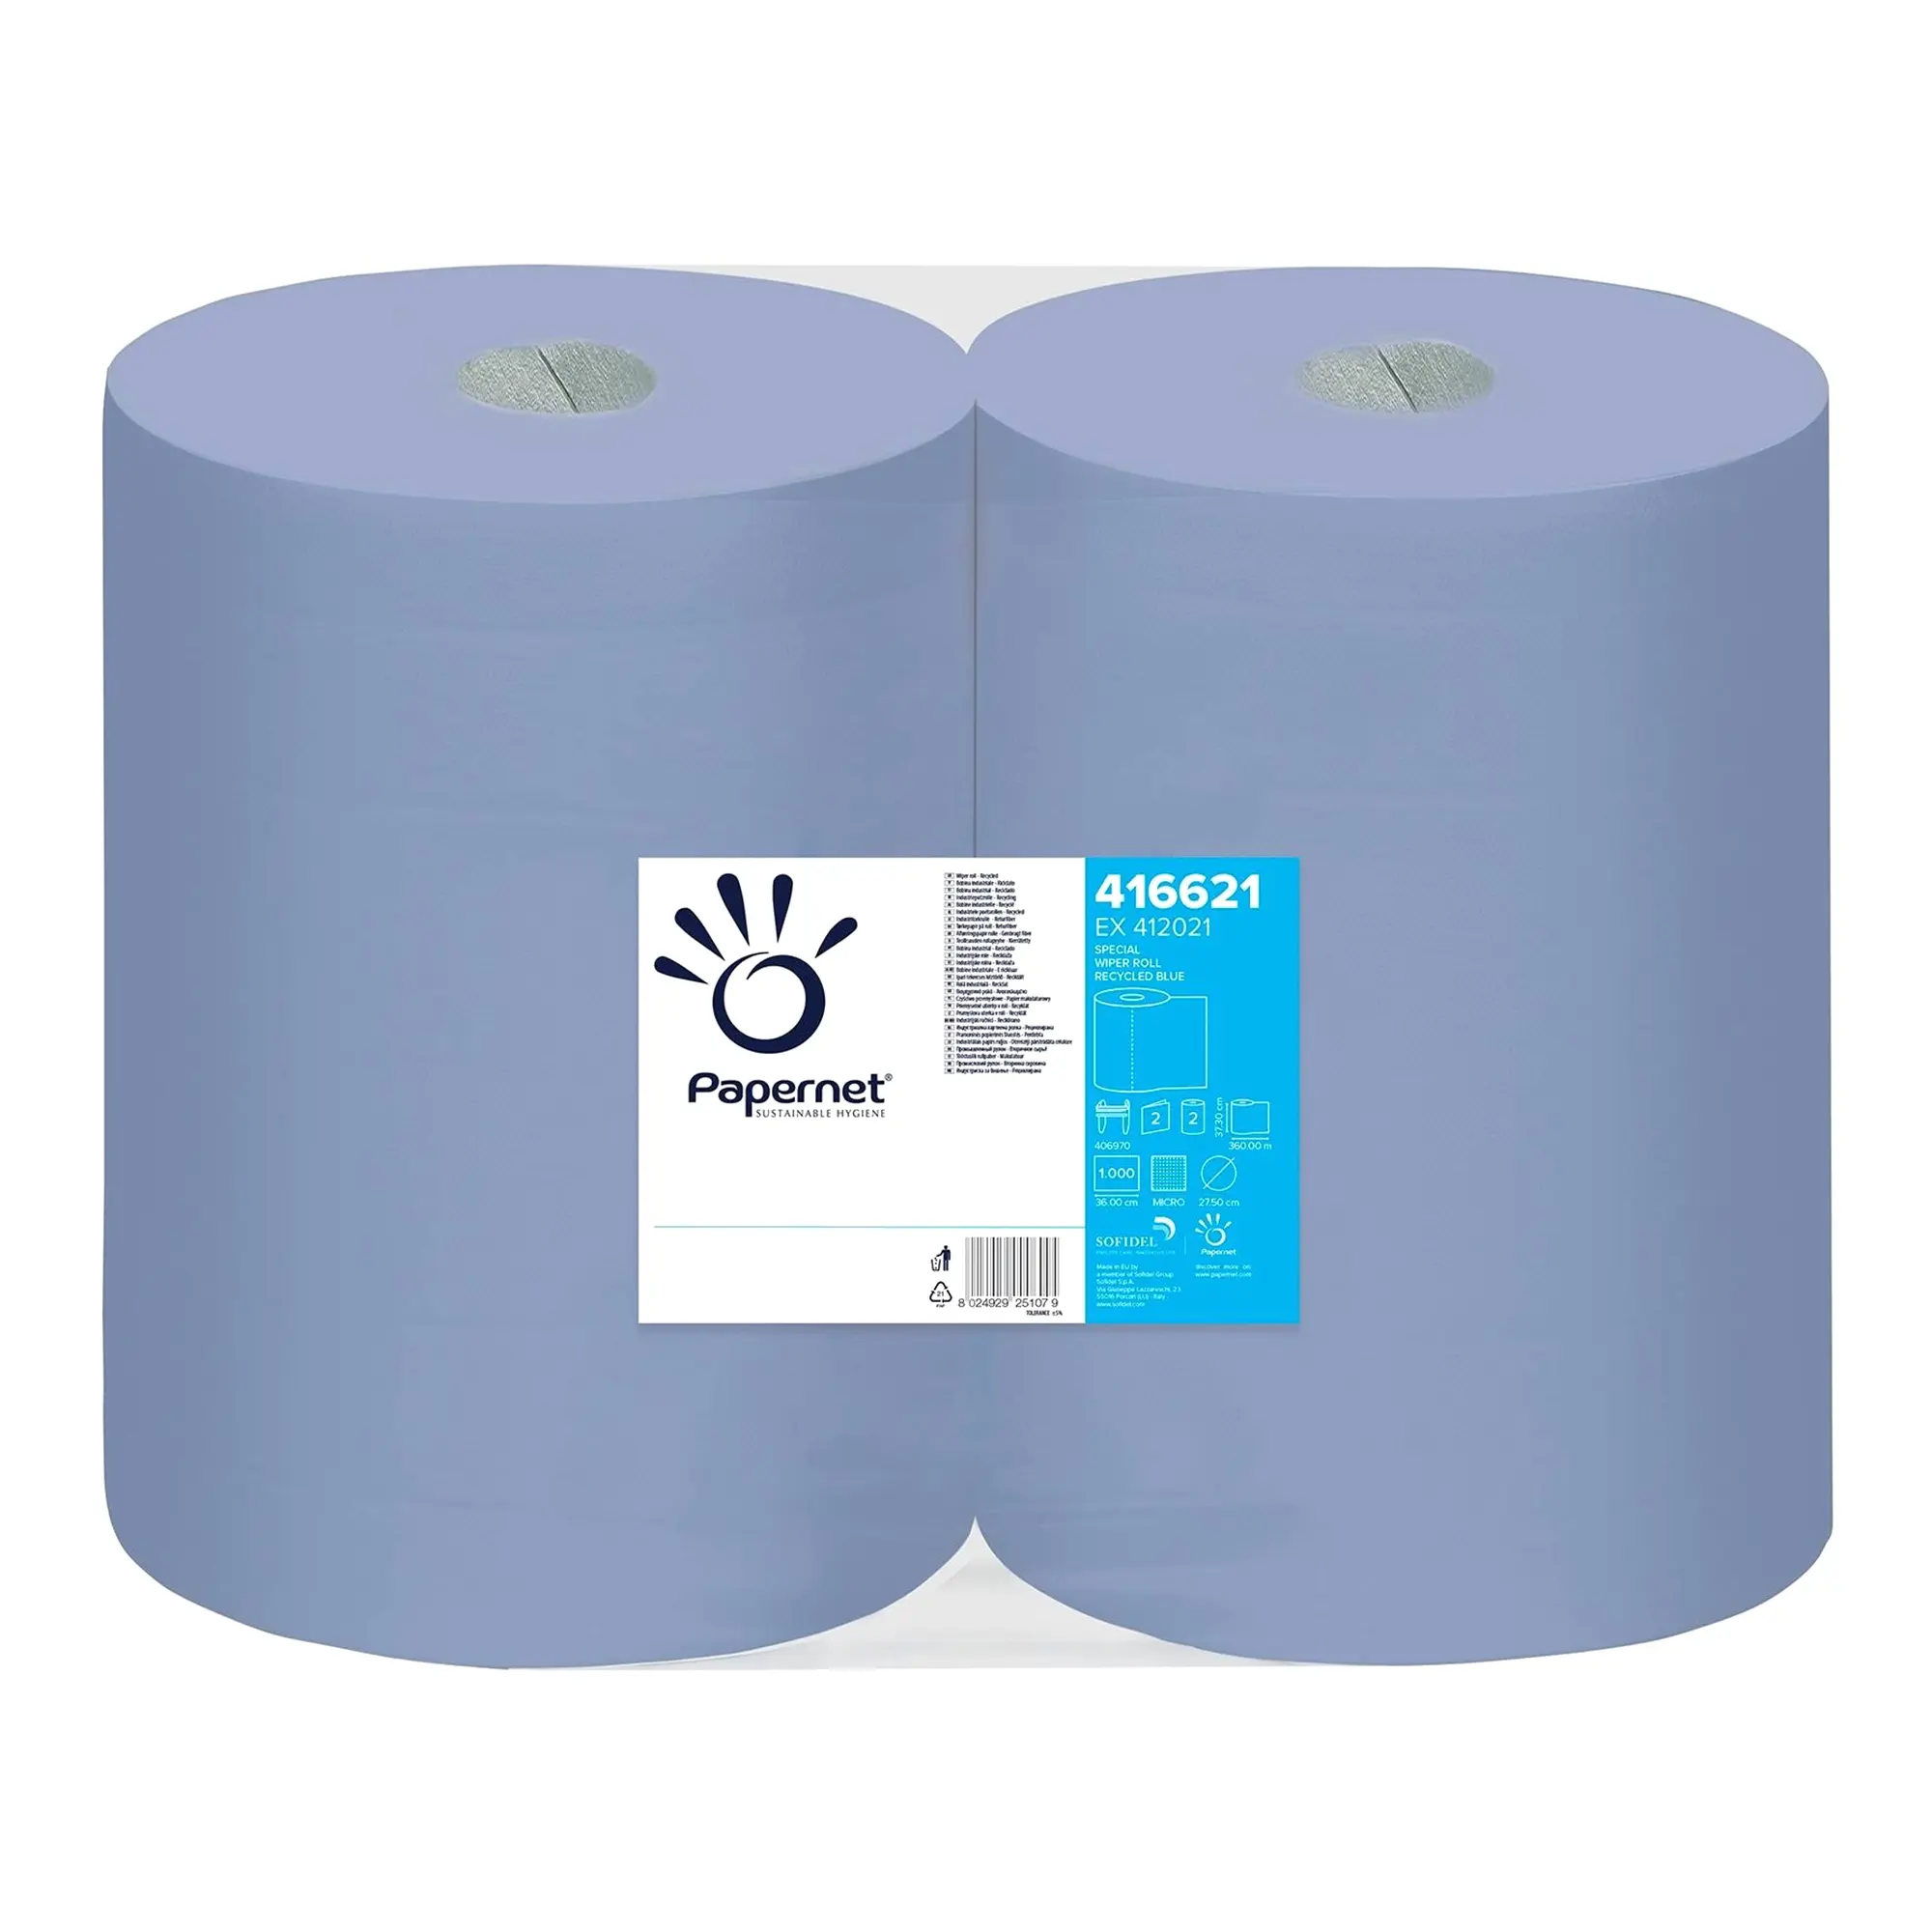 Papernet Industrieputztuchrollen blau 2-lagig, 37,3 cm breit, 1000 Tücher